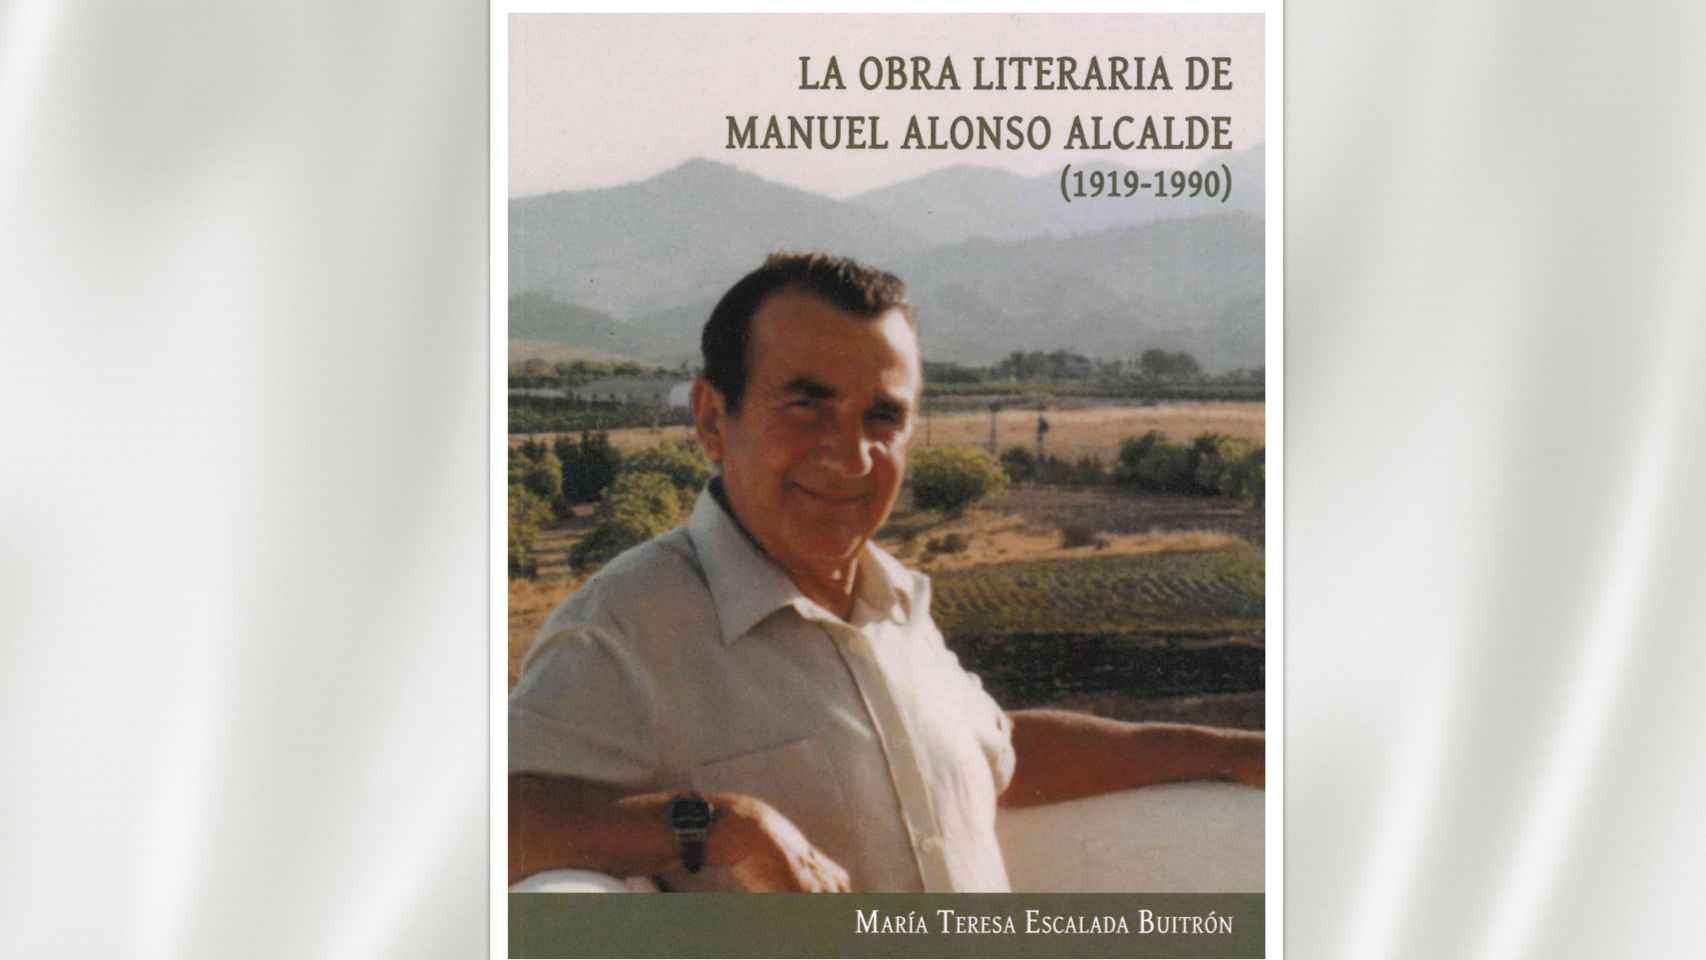 Libro de María Teresa Escalona sobre el escritor Manuel Alonso Alcalde